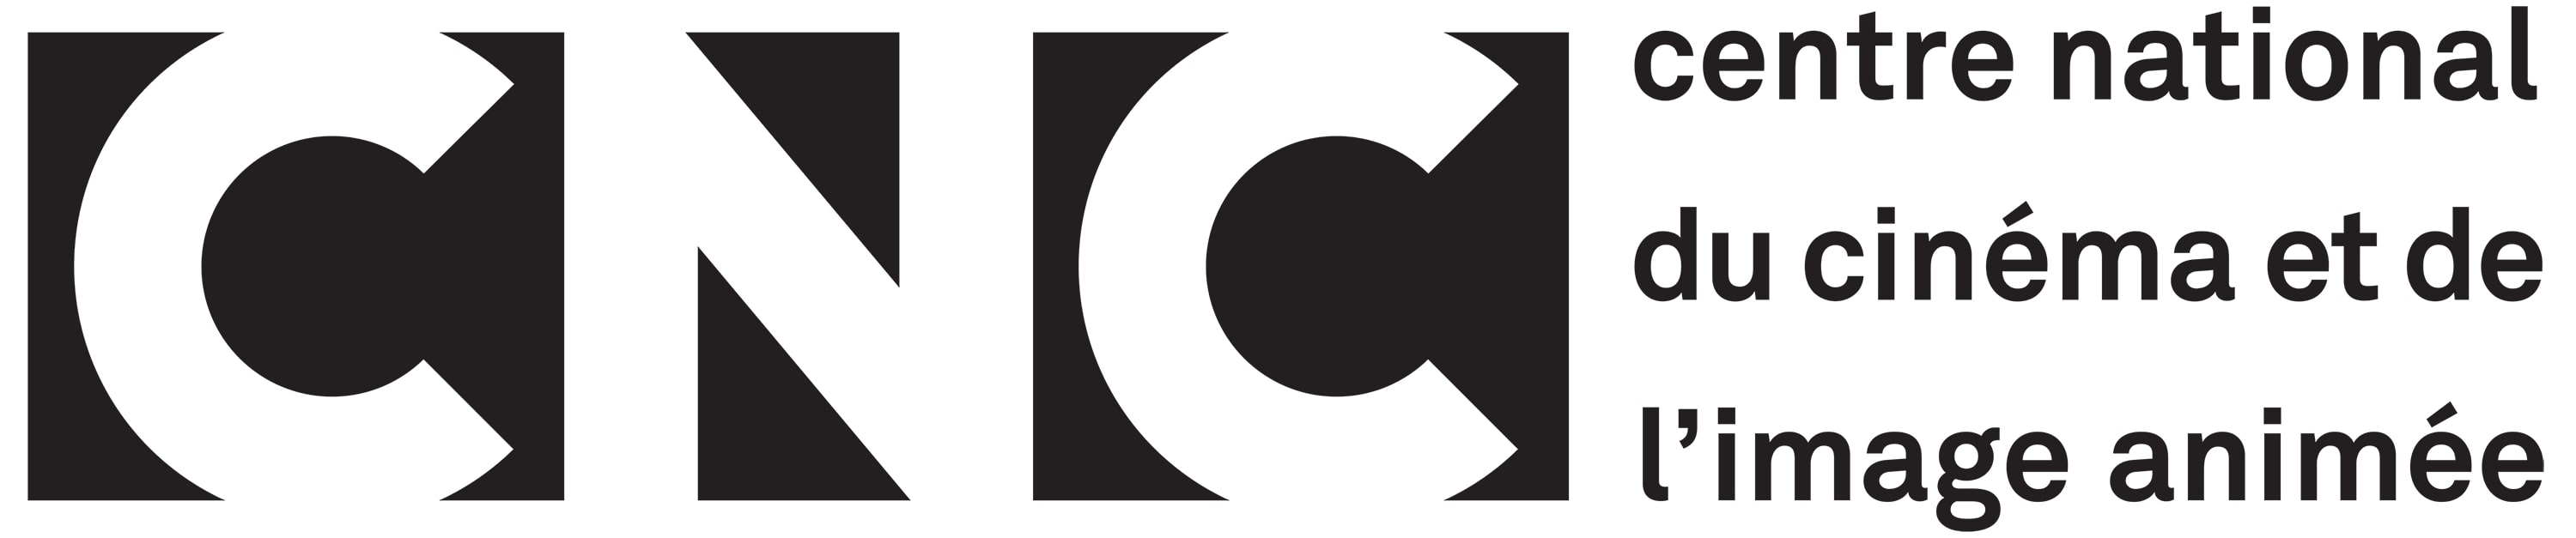 logo développé noir.jpg